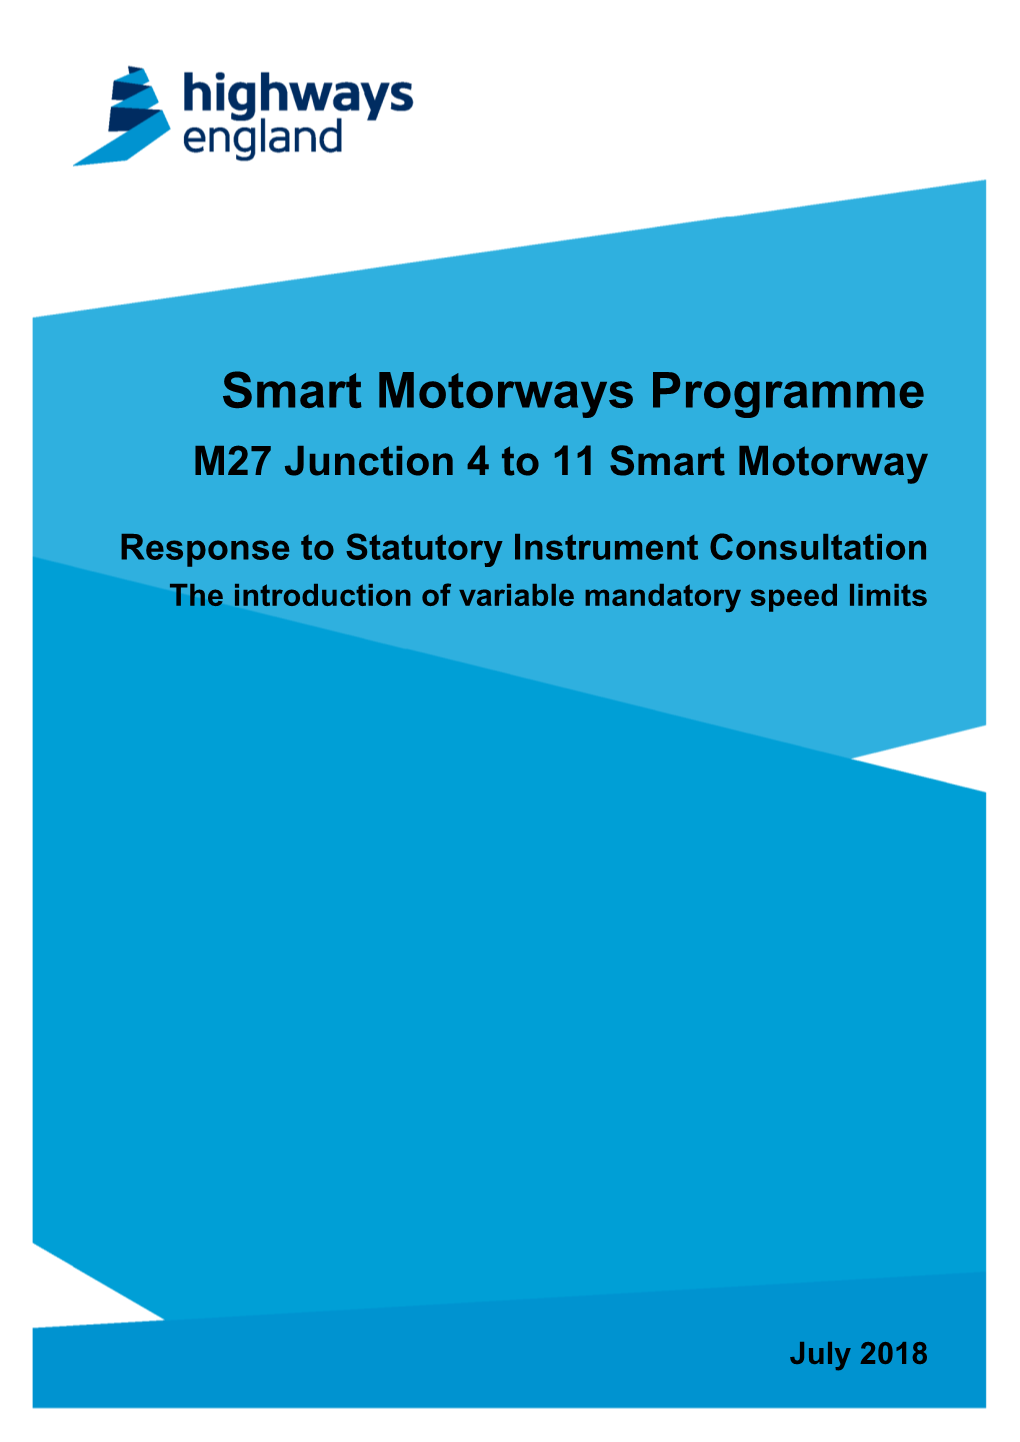 Smart Motorways Programme M27 Junction 4 to 11 Smart Motorway